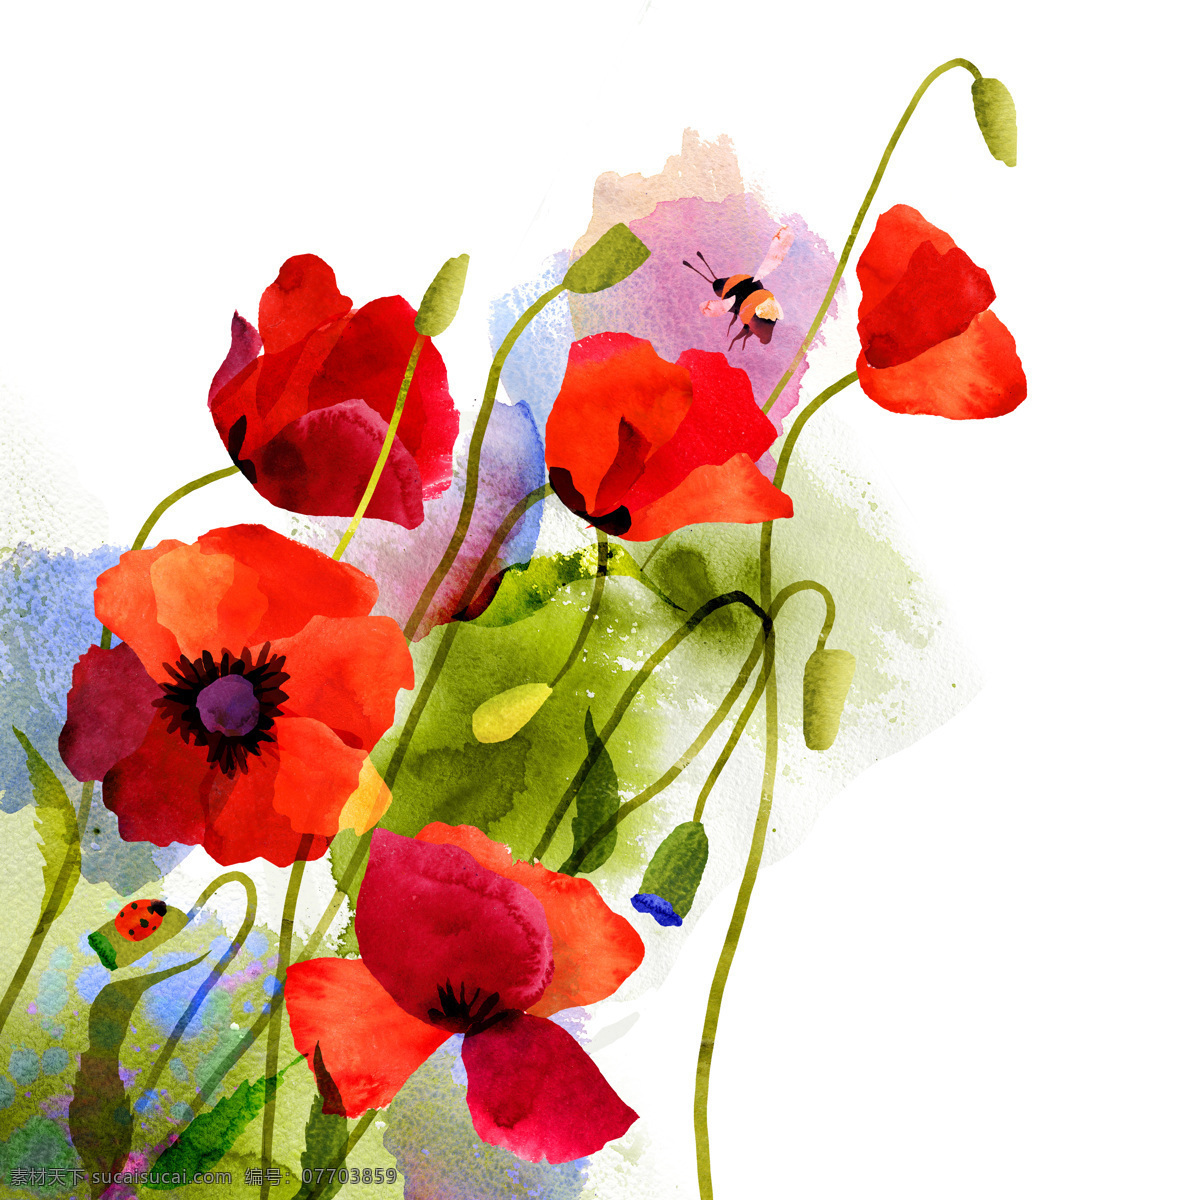 水墨 红色 花朵 红色花朵 水墨画 手绘花朵 手绘图案 植物 花卉 书画文字 文化艺术